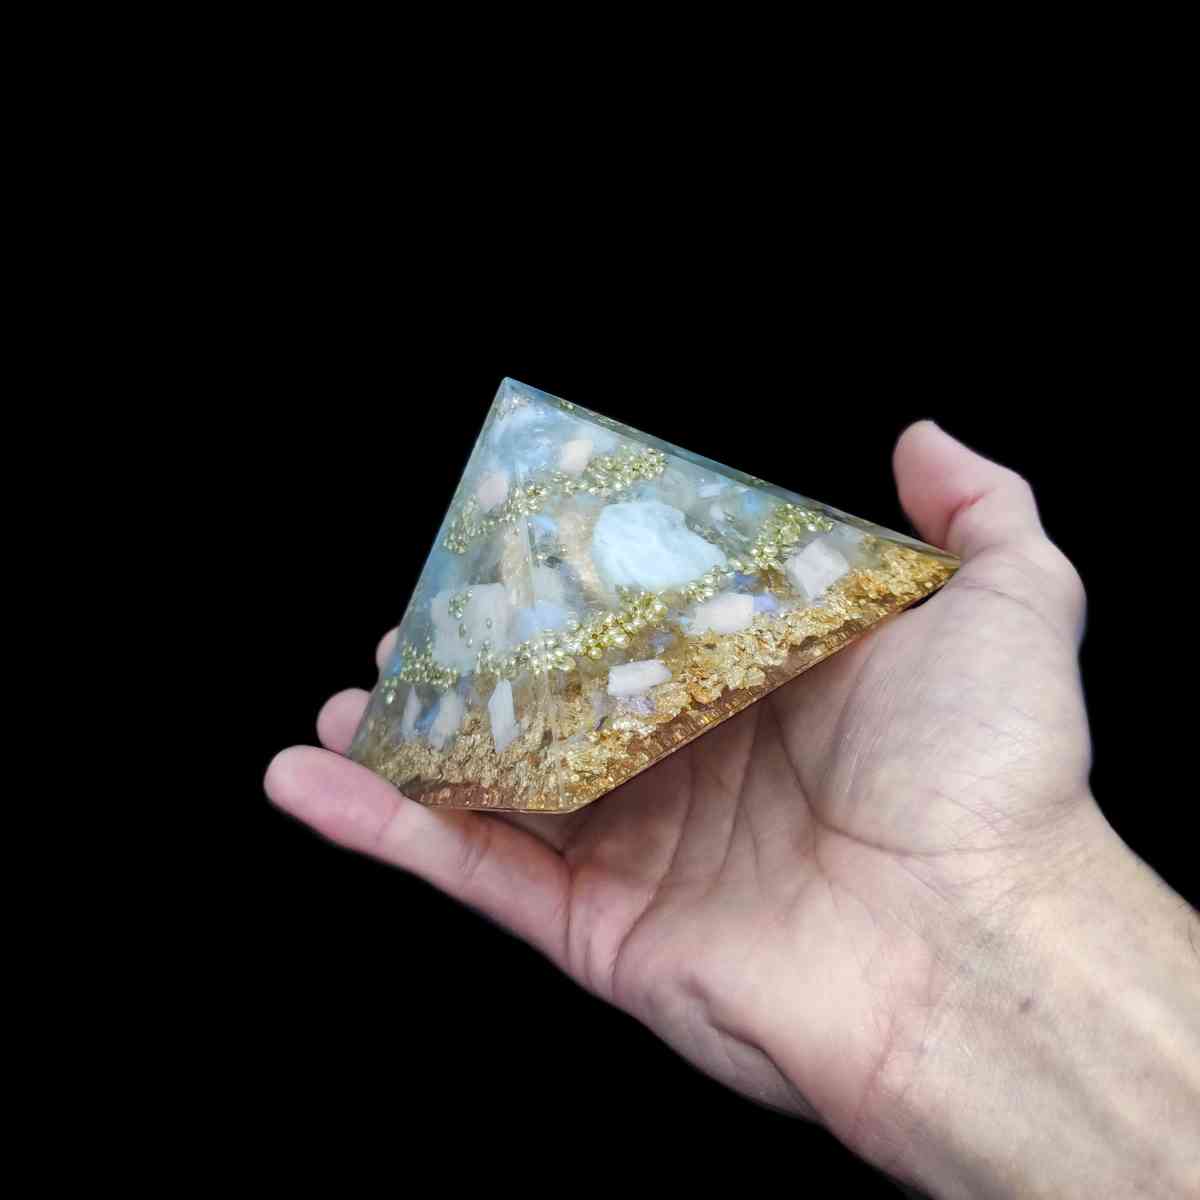 Orgonit Pyramide mit Regenbogenmondstein & Gold, welche von einer Hand gehalten wird.